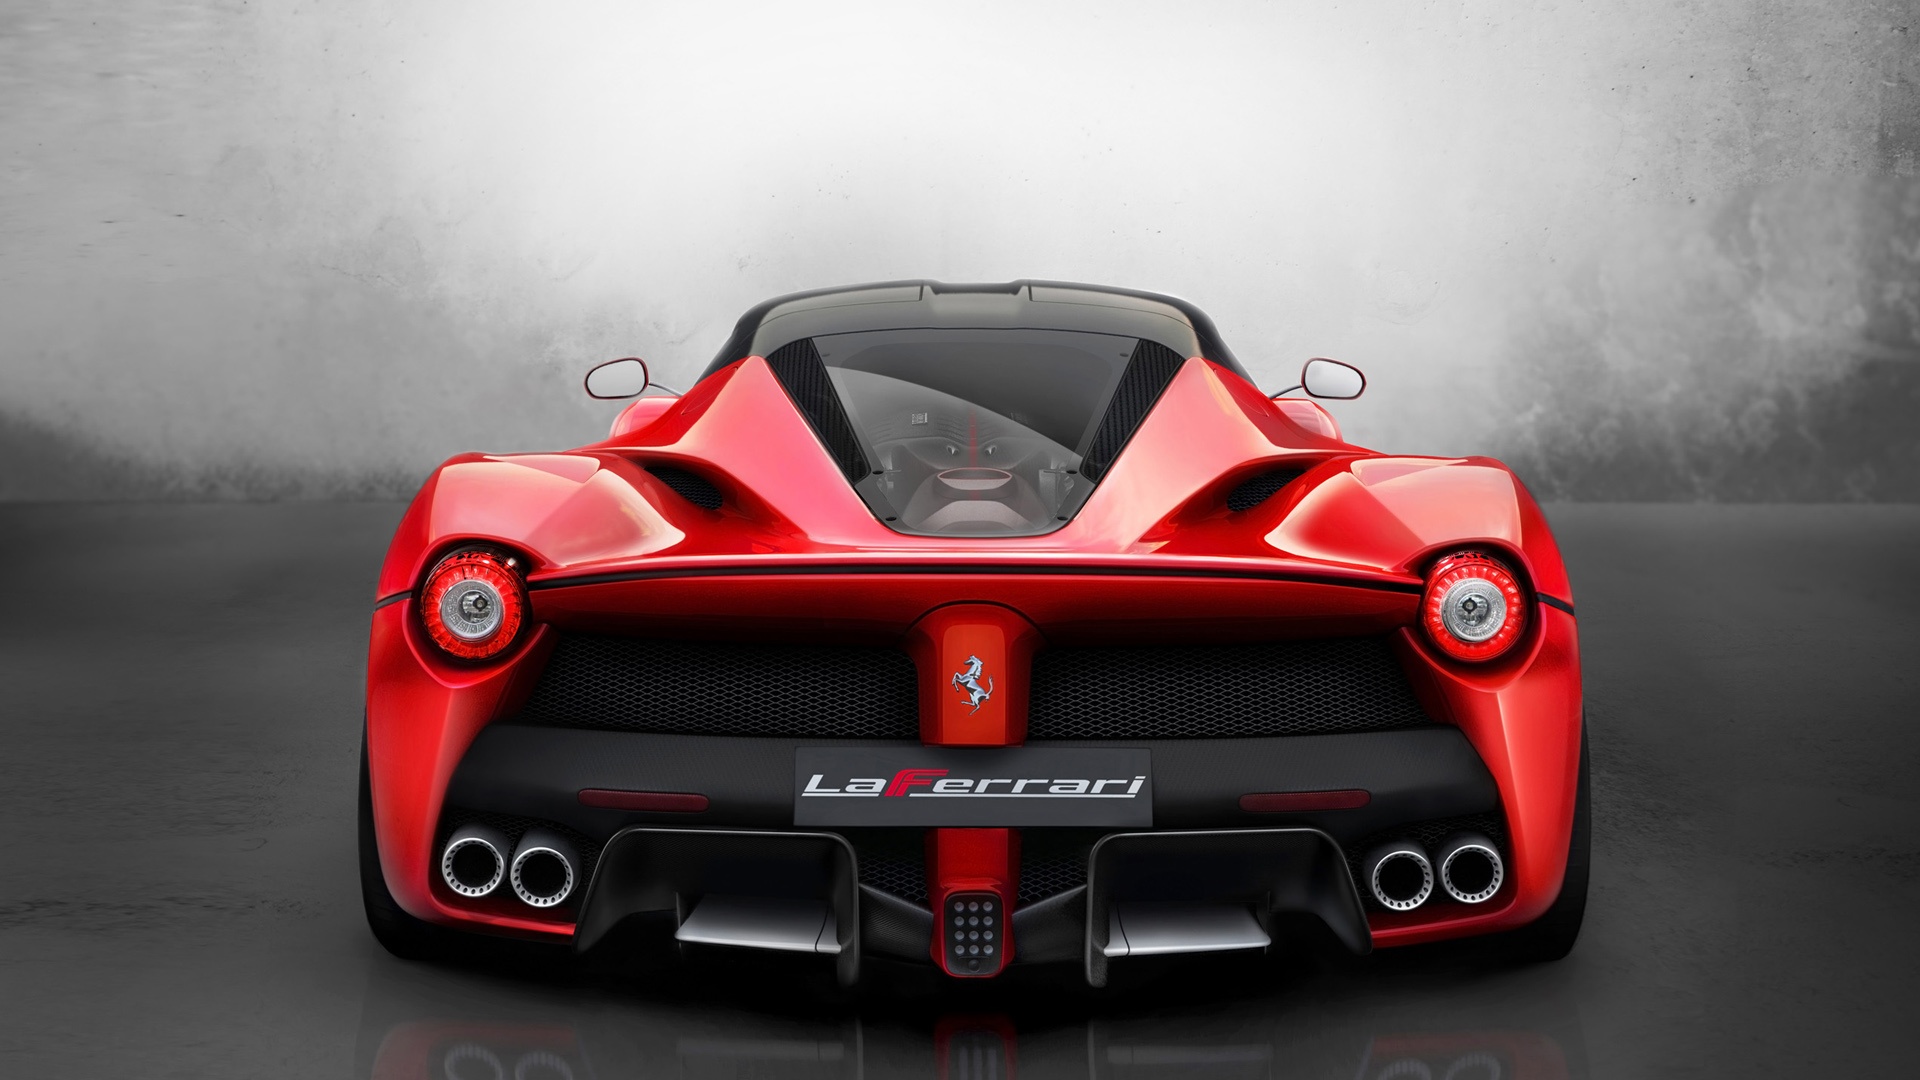 Ferrari Laferrari Wallpaper In Resolution